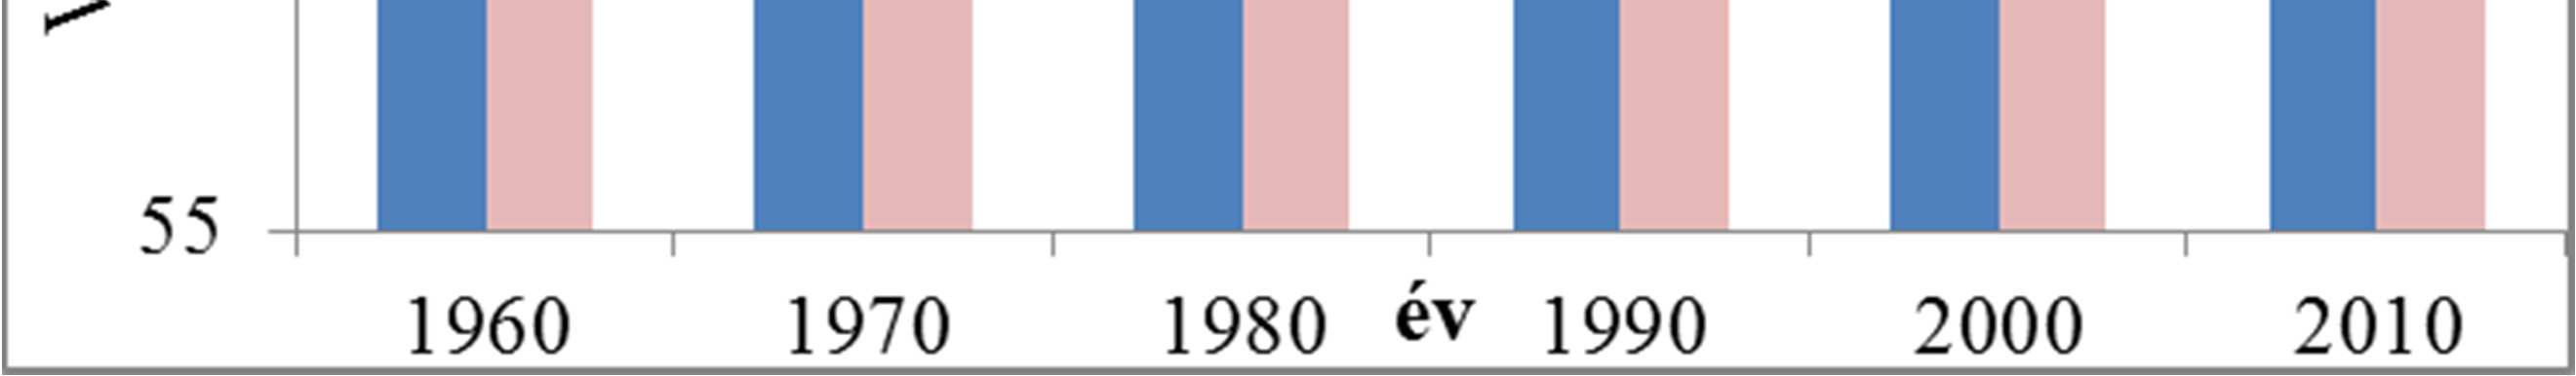 1. ábra Születéskor várható élettartam Magyarországon években (1960-2010) Forrás: KSH, Demográfiai évkönyv, 2012, az ábra saját szerkesztés 1960-ban a születéskor várható élettartam a férfiakra 65,9